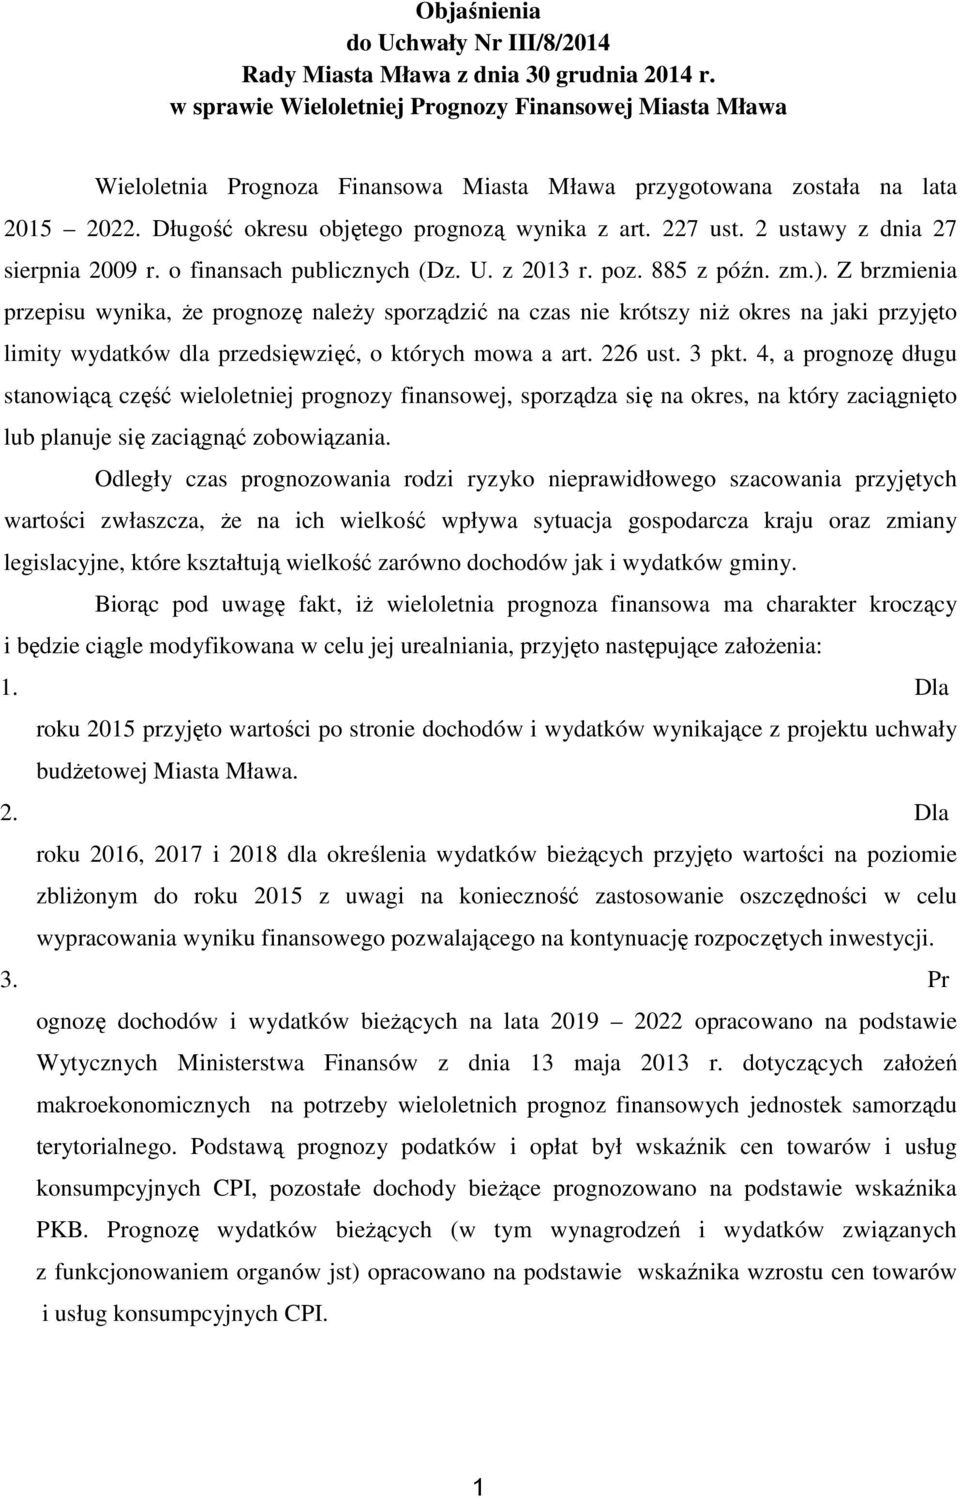 2 ustay z dnia 27 sierpnia 2009 r. o finansach publicznych (Dz. U. z 2013 r. poz. 885 z późn. zm.).